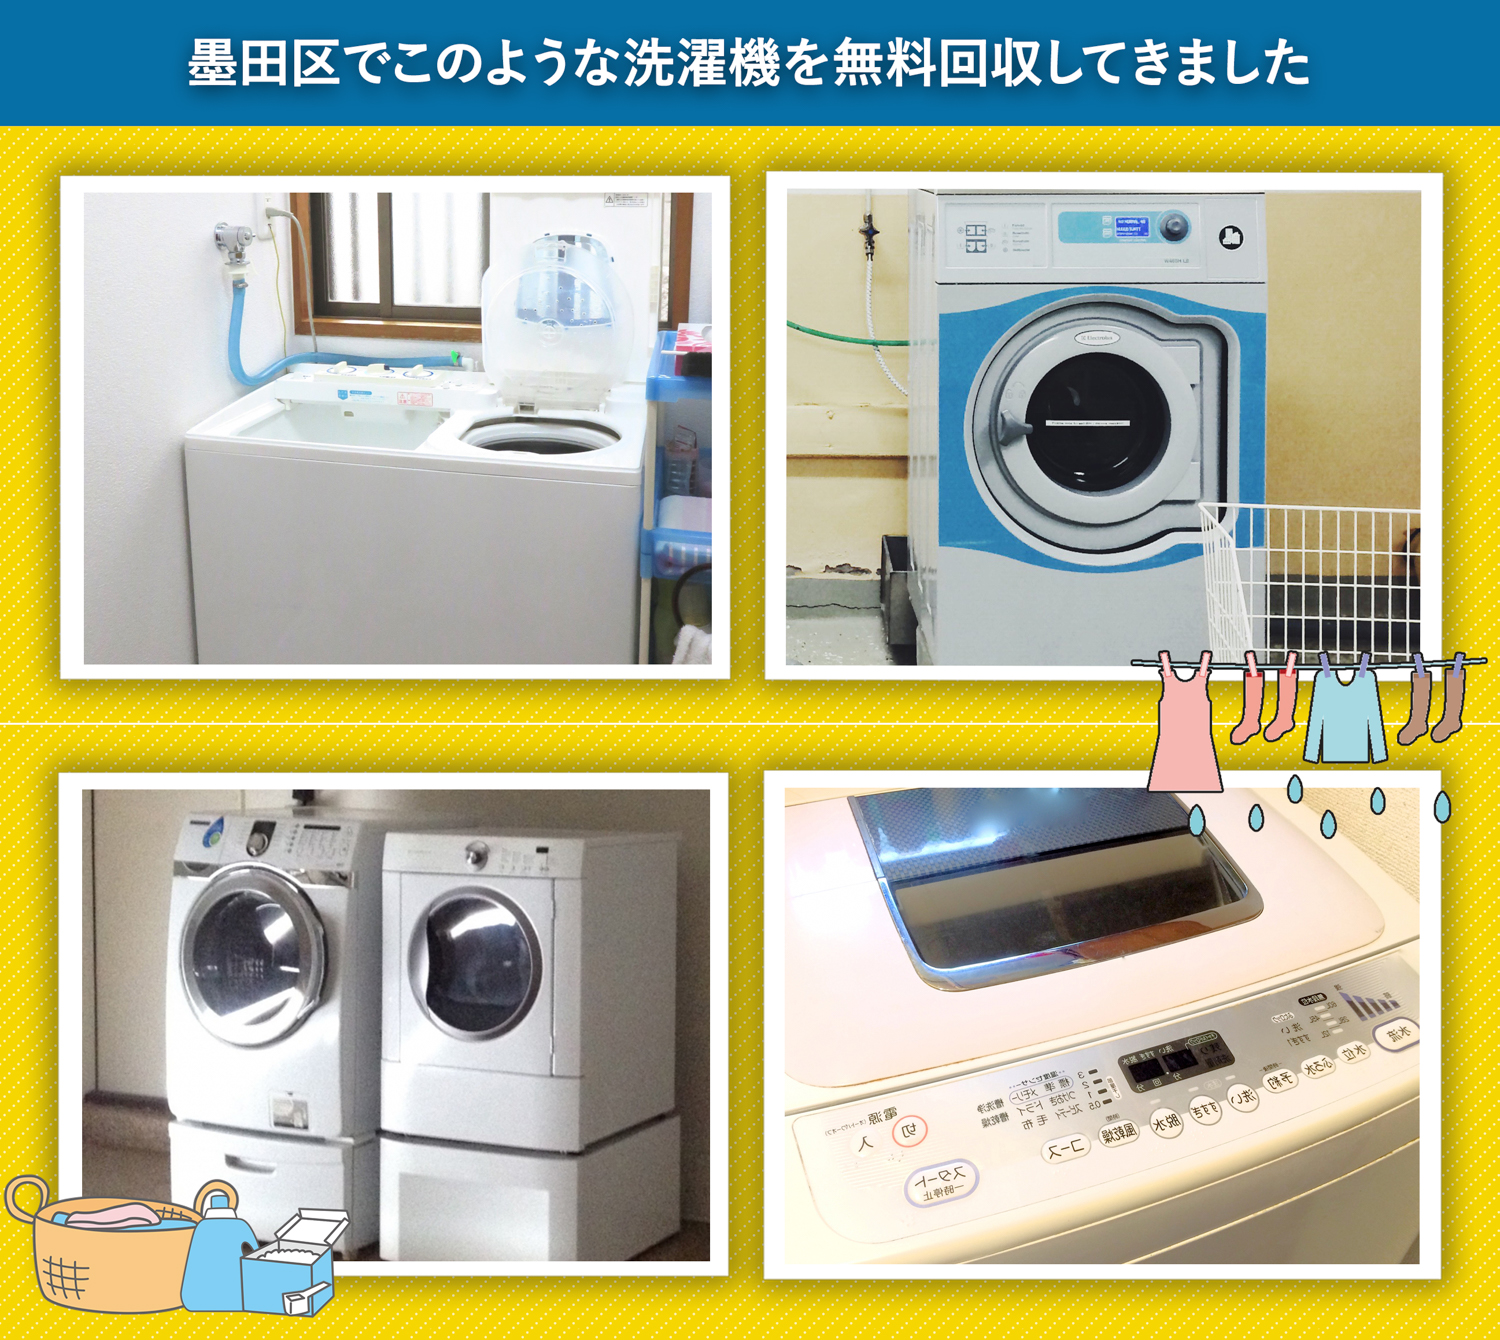 墨田区でこのような洗濯機を無料回収してきました。